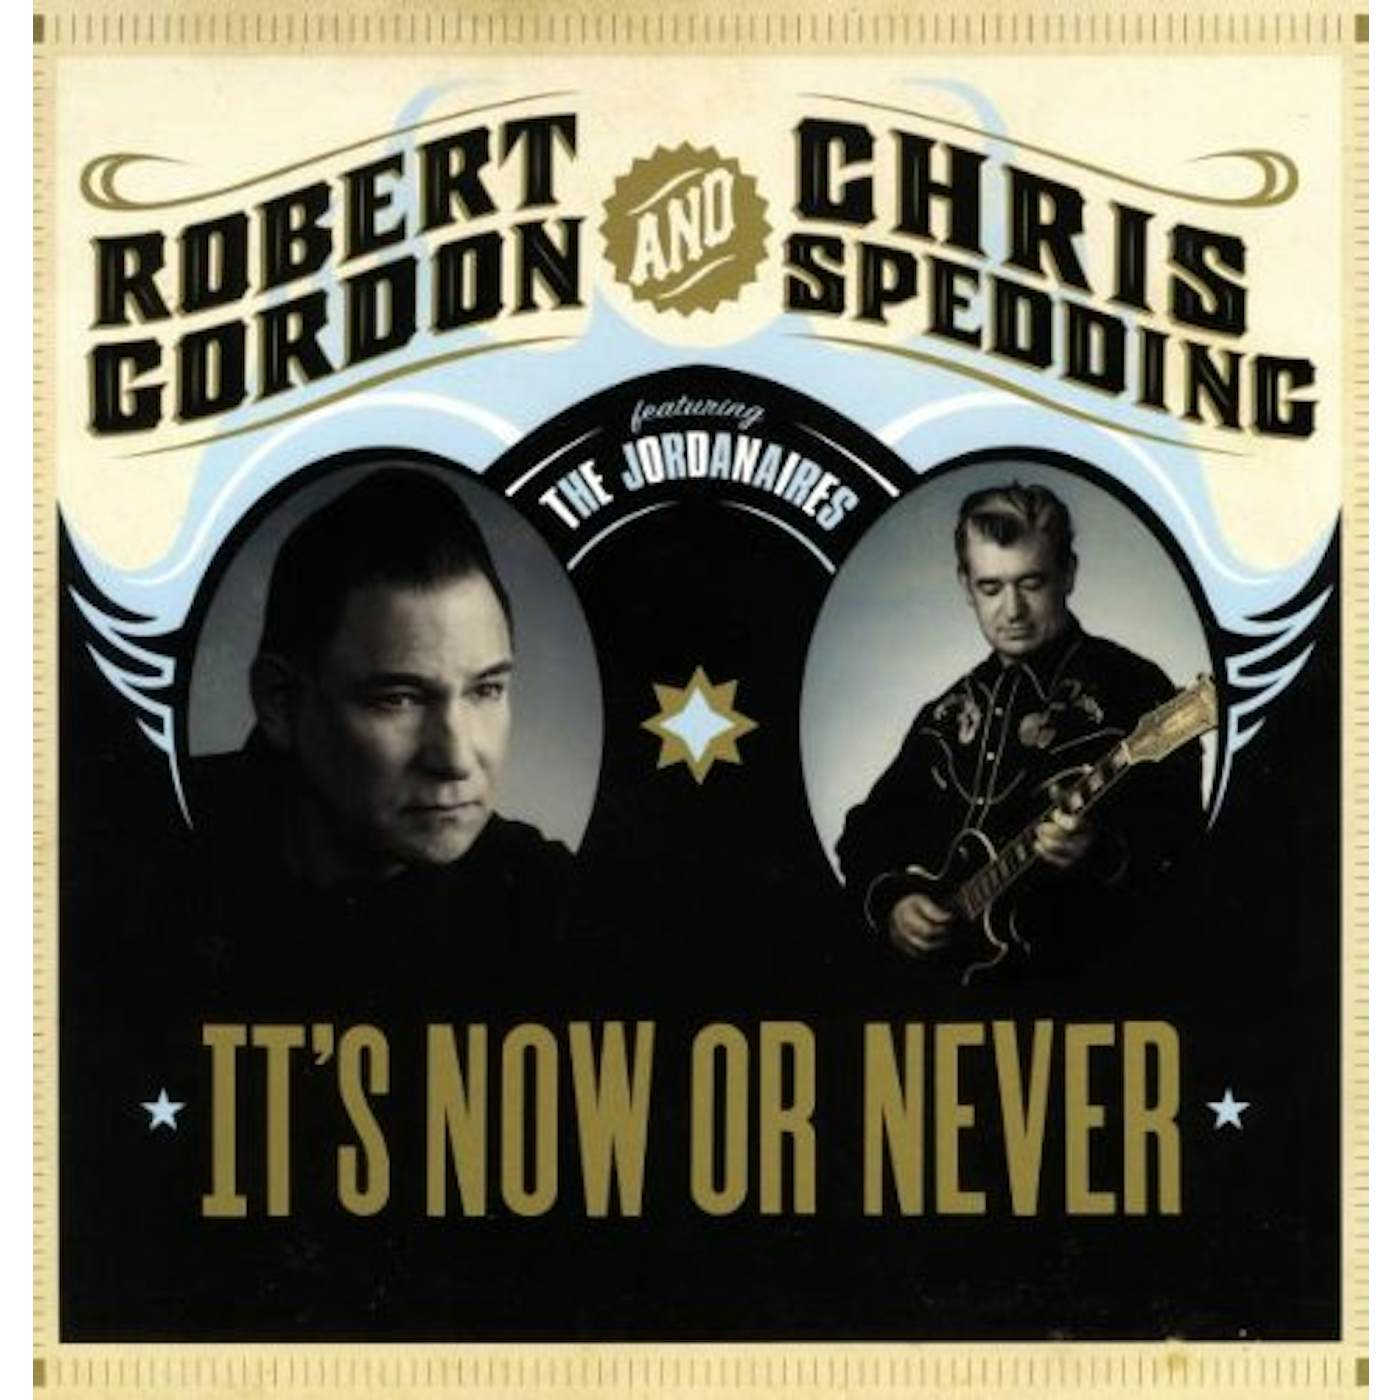 Robert Gordon & Chris Spedding IT'S NOW OR NEVER (Vinyl)